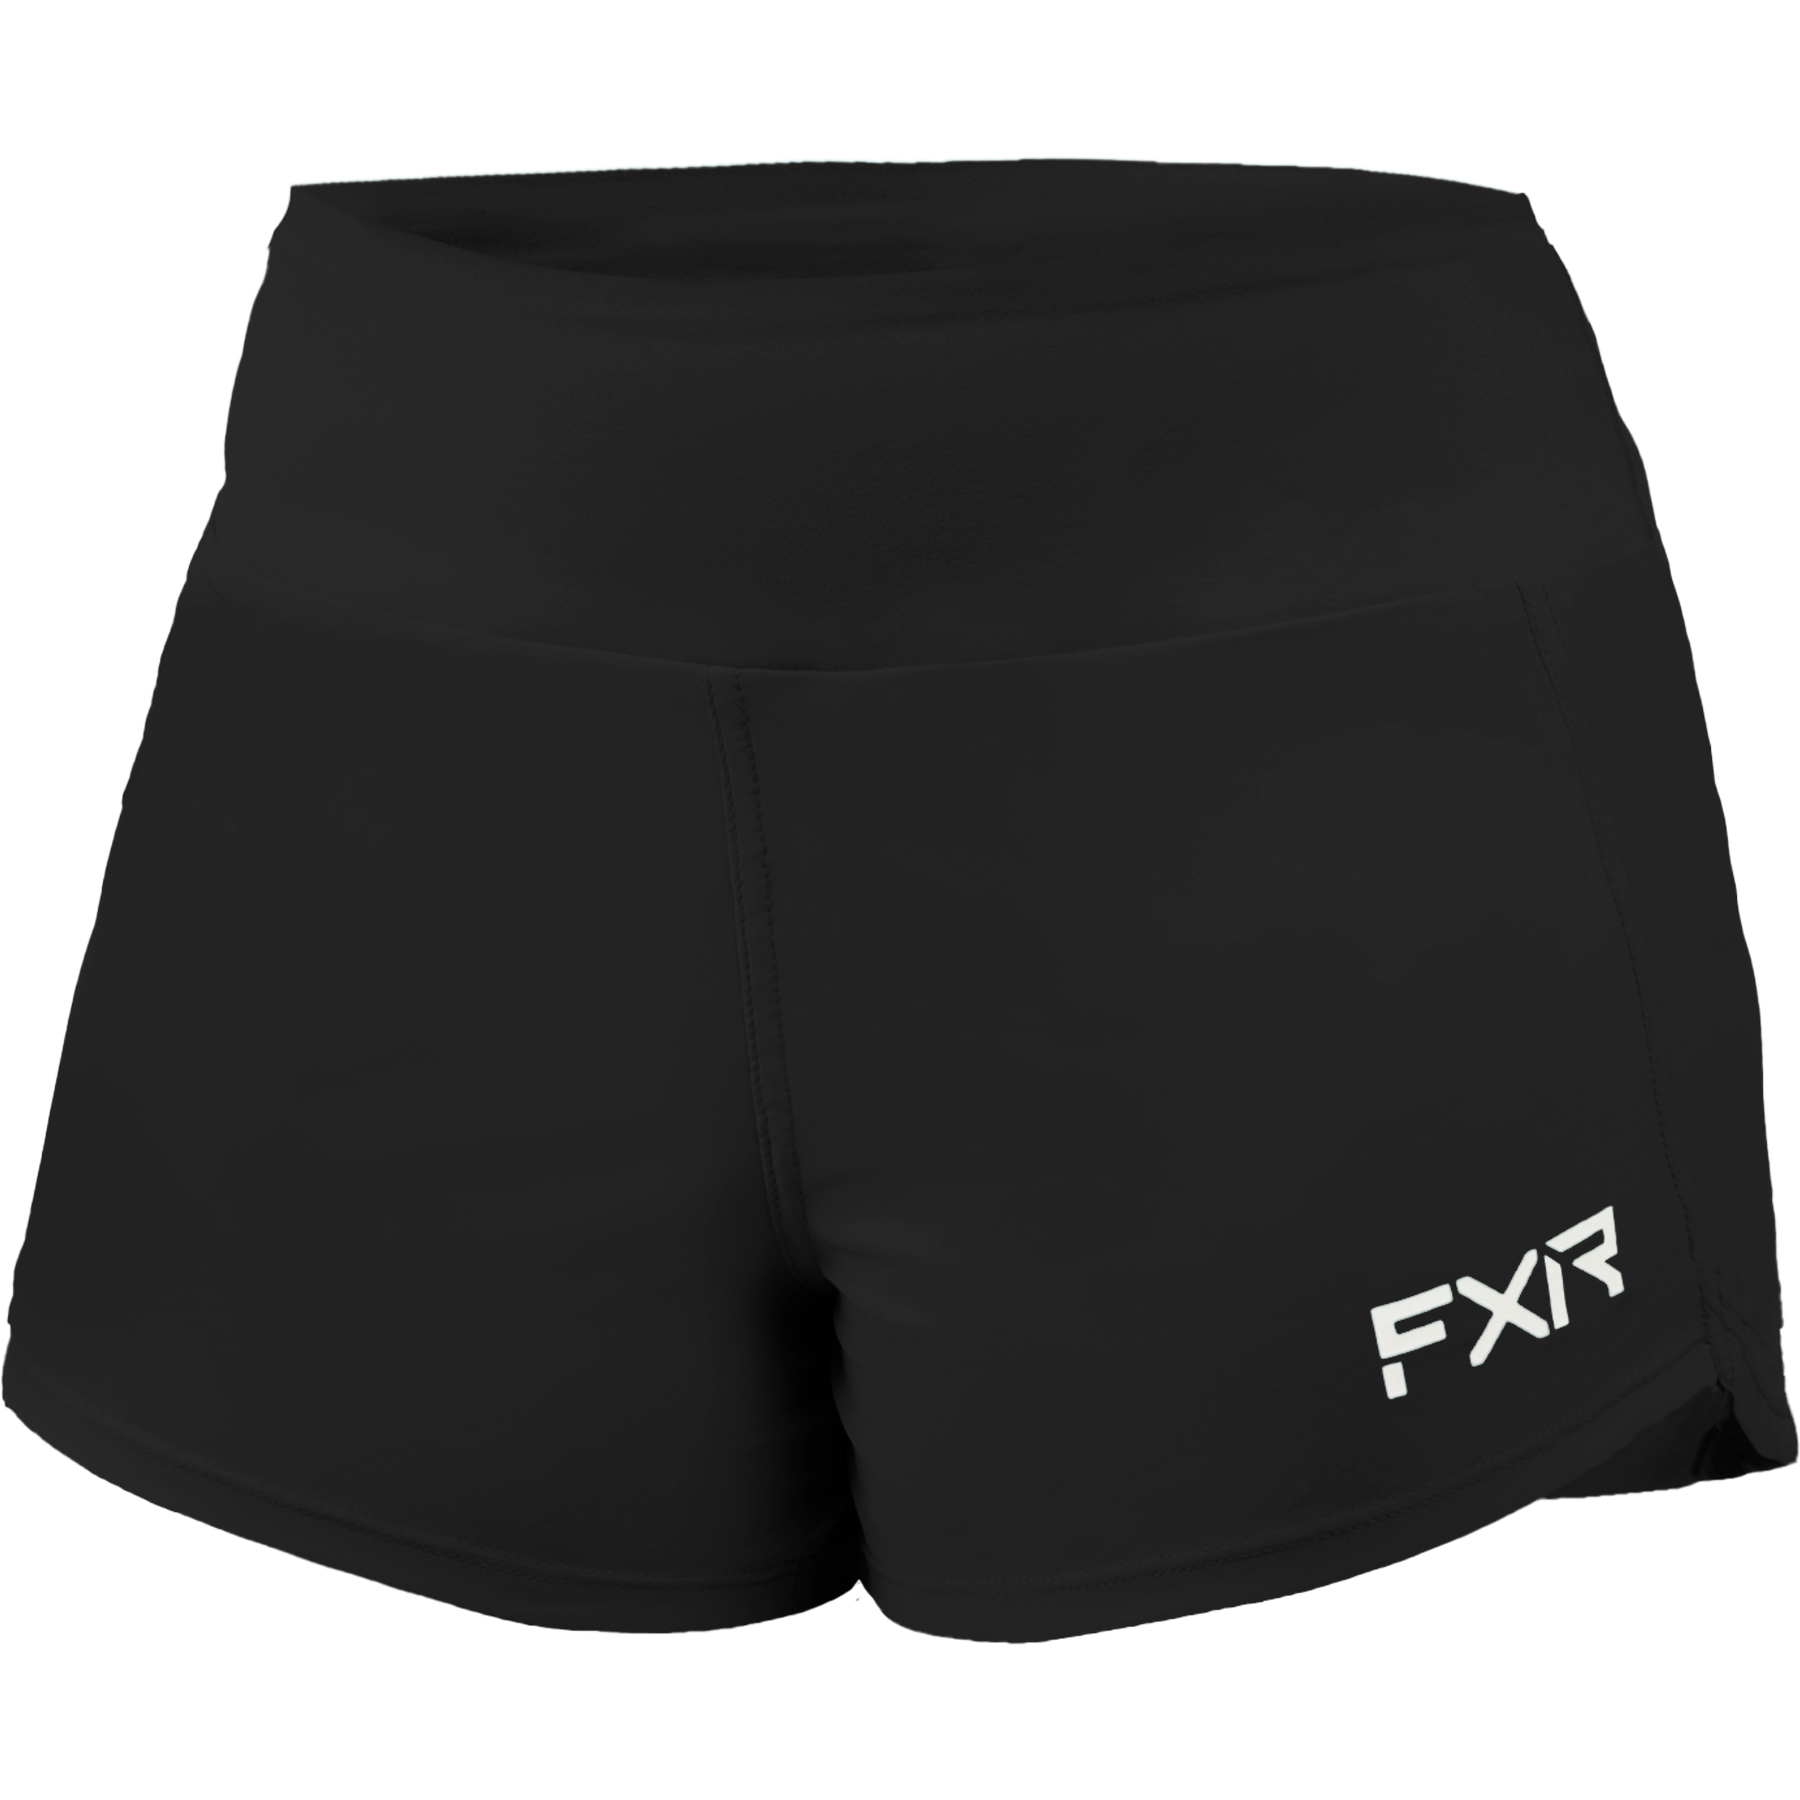 Shorts FXR W´s Coastal, Black/Grey